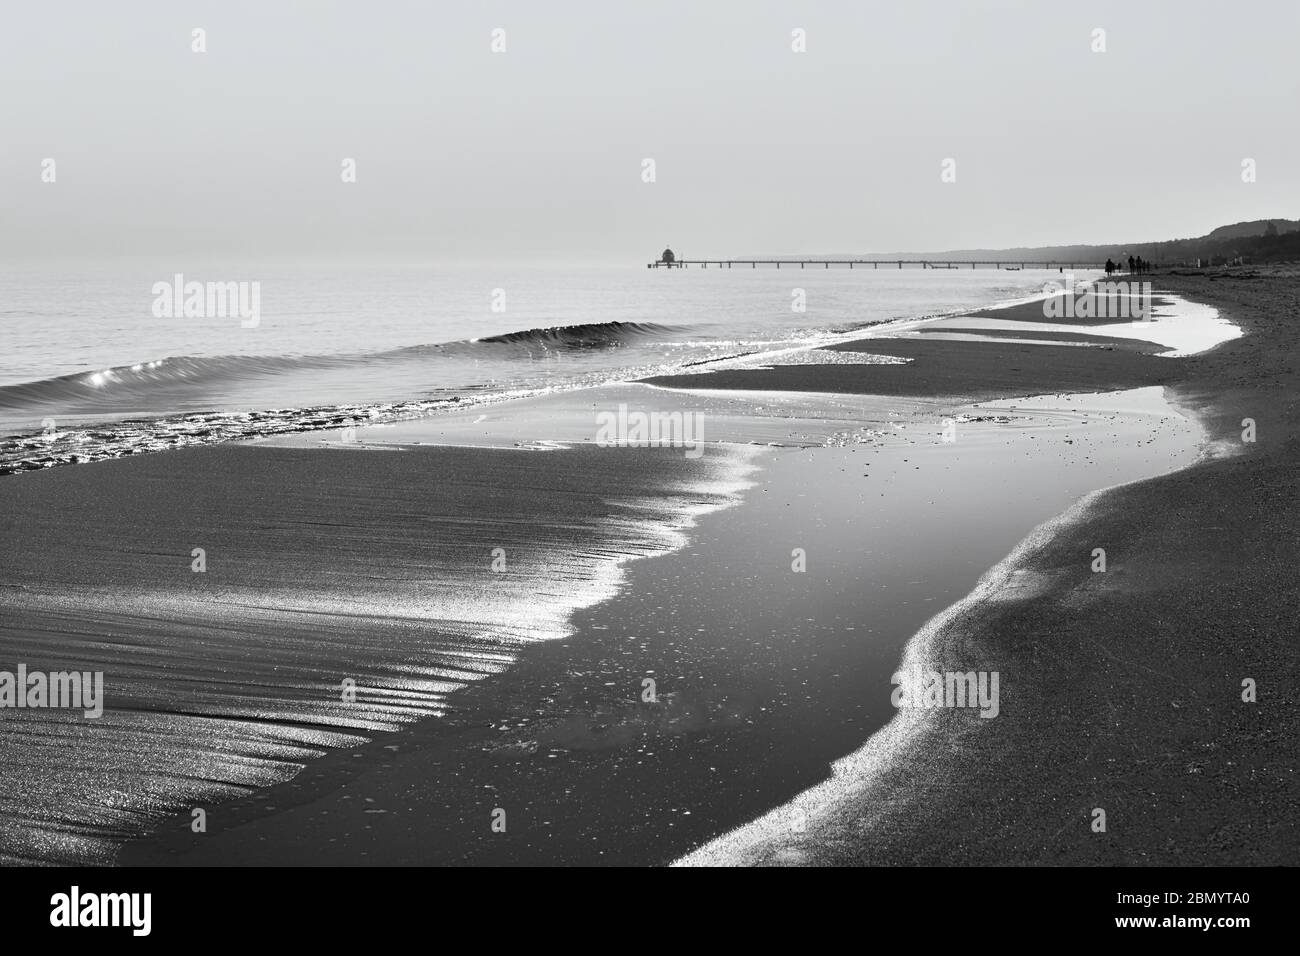 Blick entlang der Wasserlinie mit Welle, Wasserflächen und Spaziergängern sowie einem Pier im Hintergrund - Bild in Schwarz-Weiß - Ort: Ostsee Stockfoto